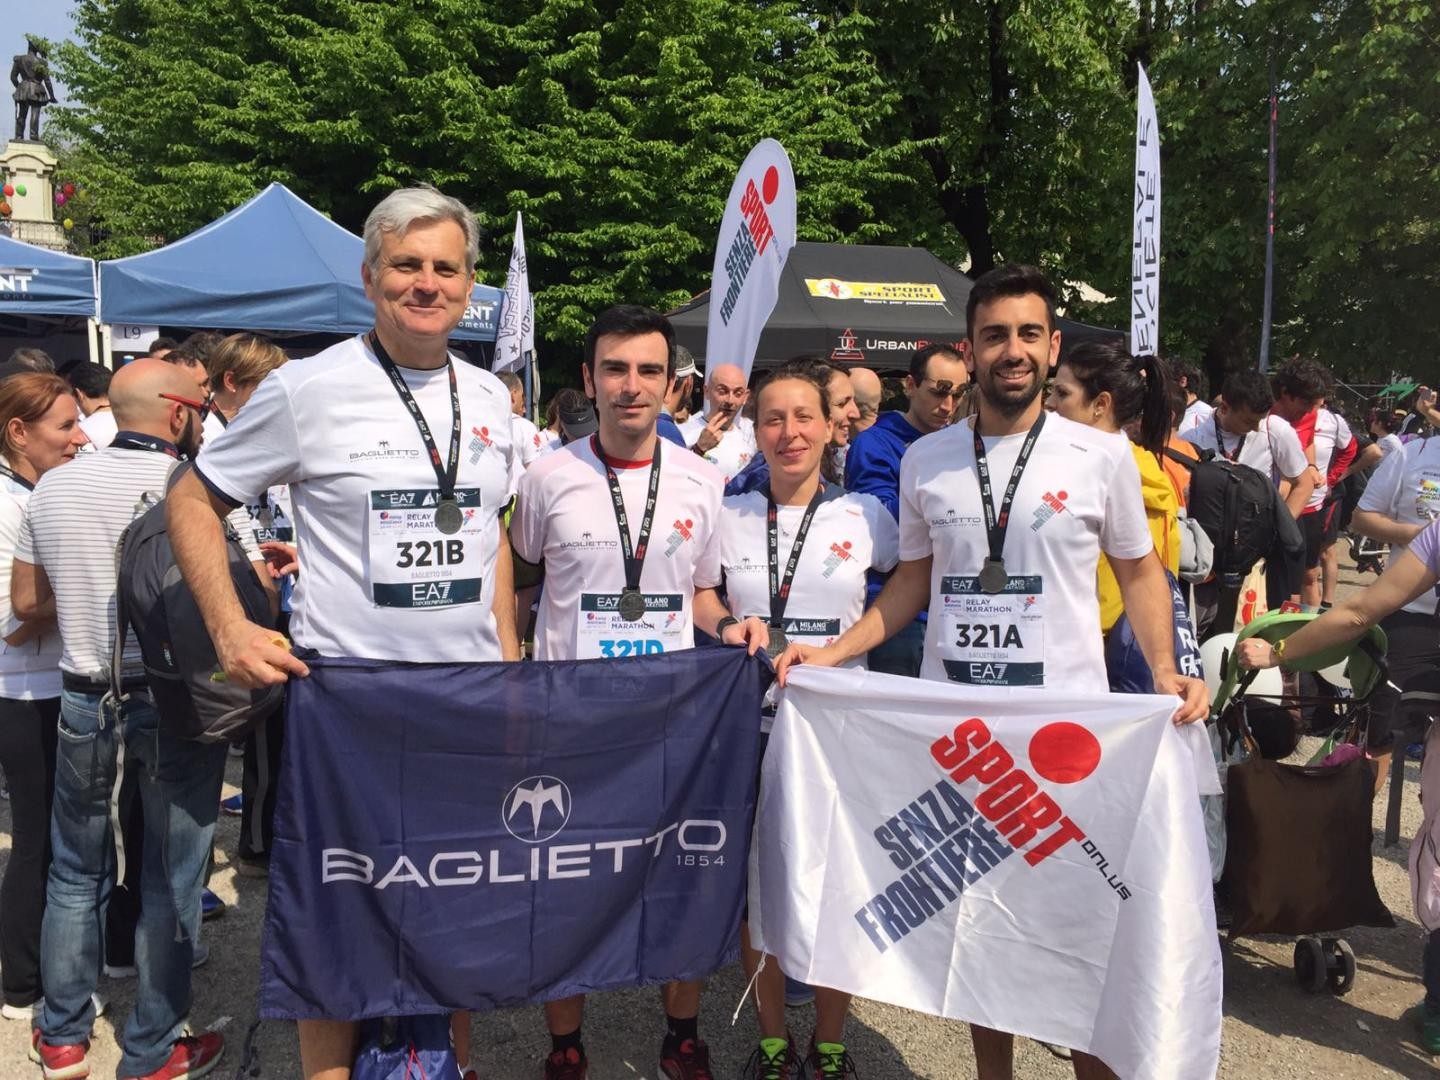 Il team Baglietto1854 alla Milano Relay Marathon 2017